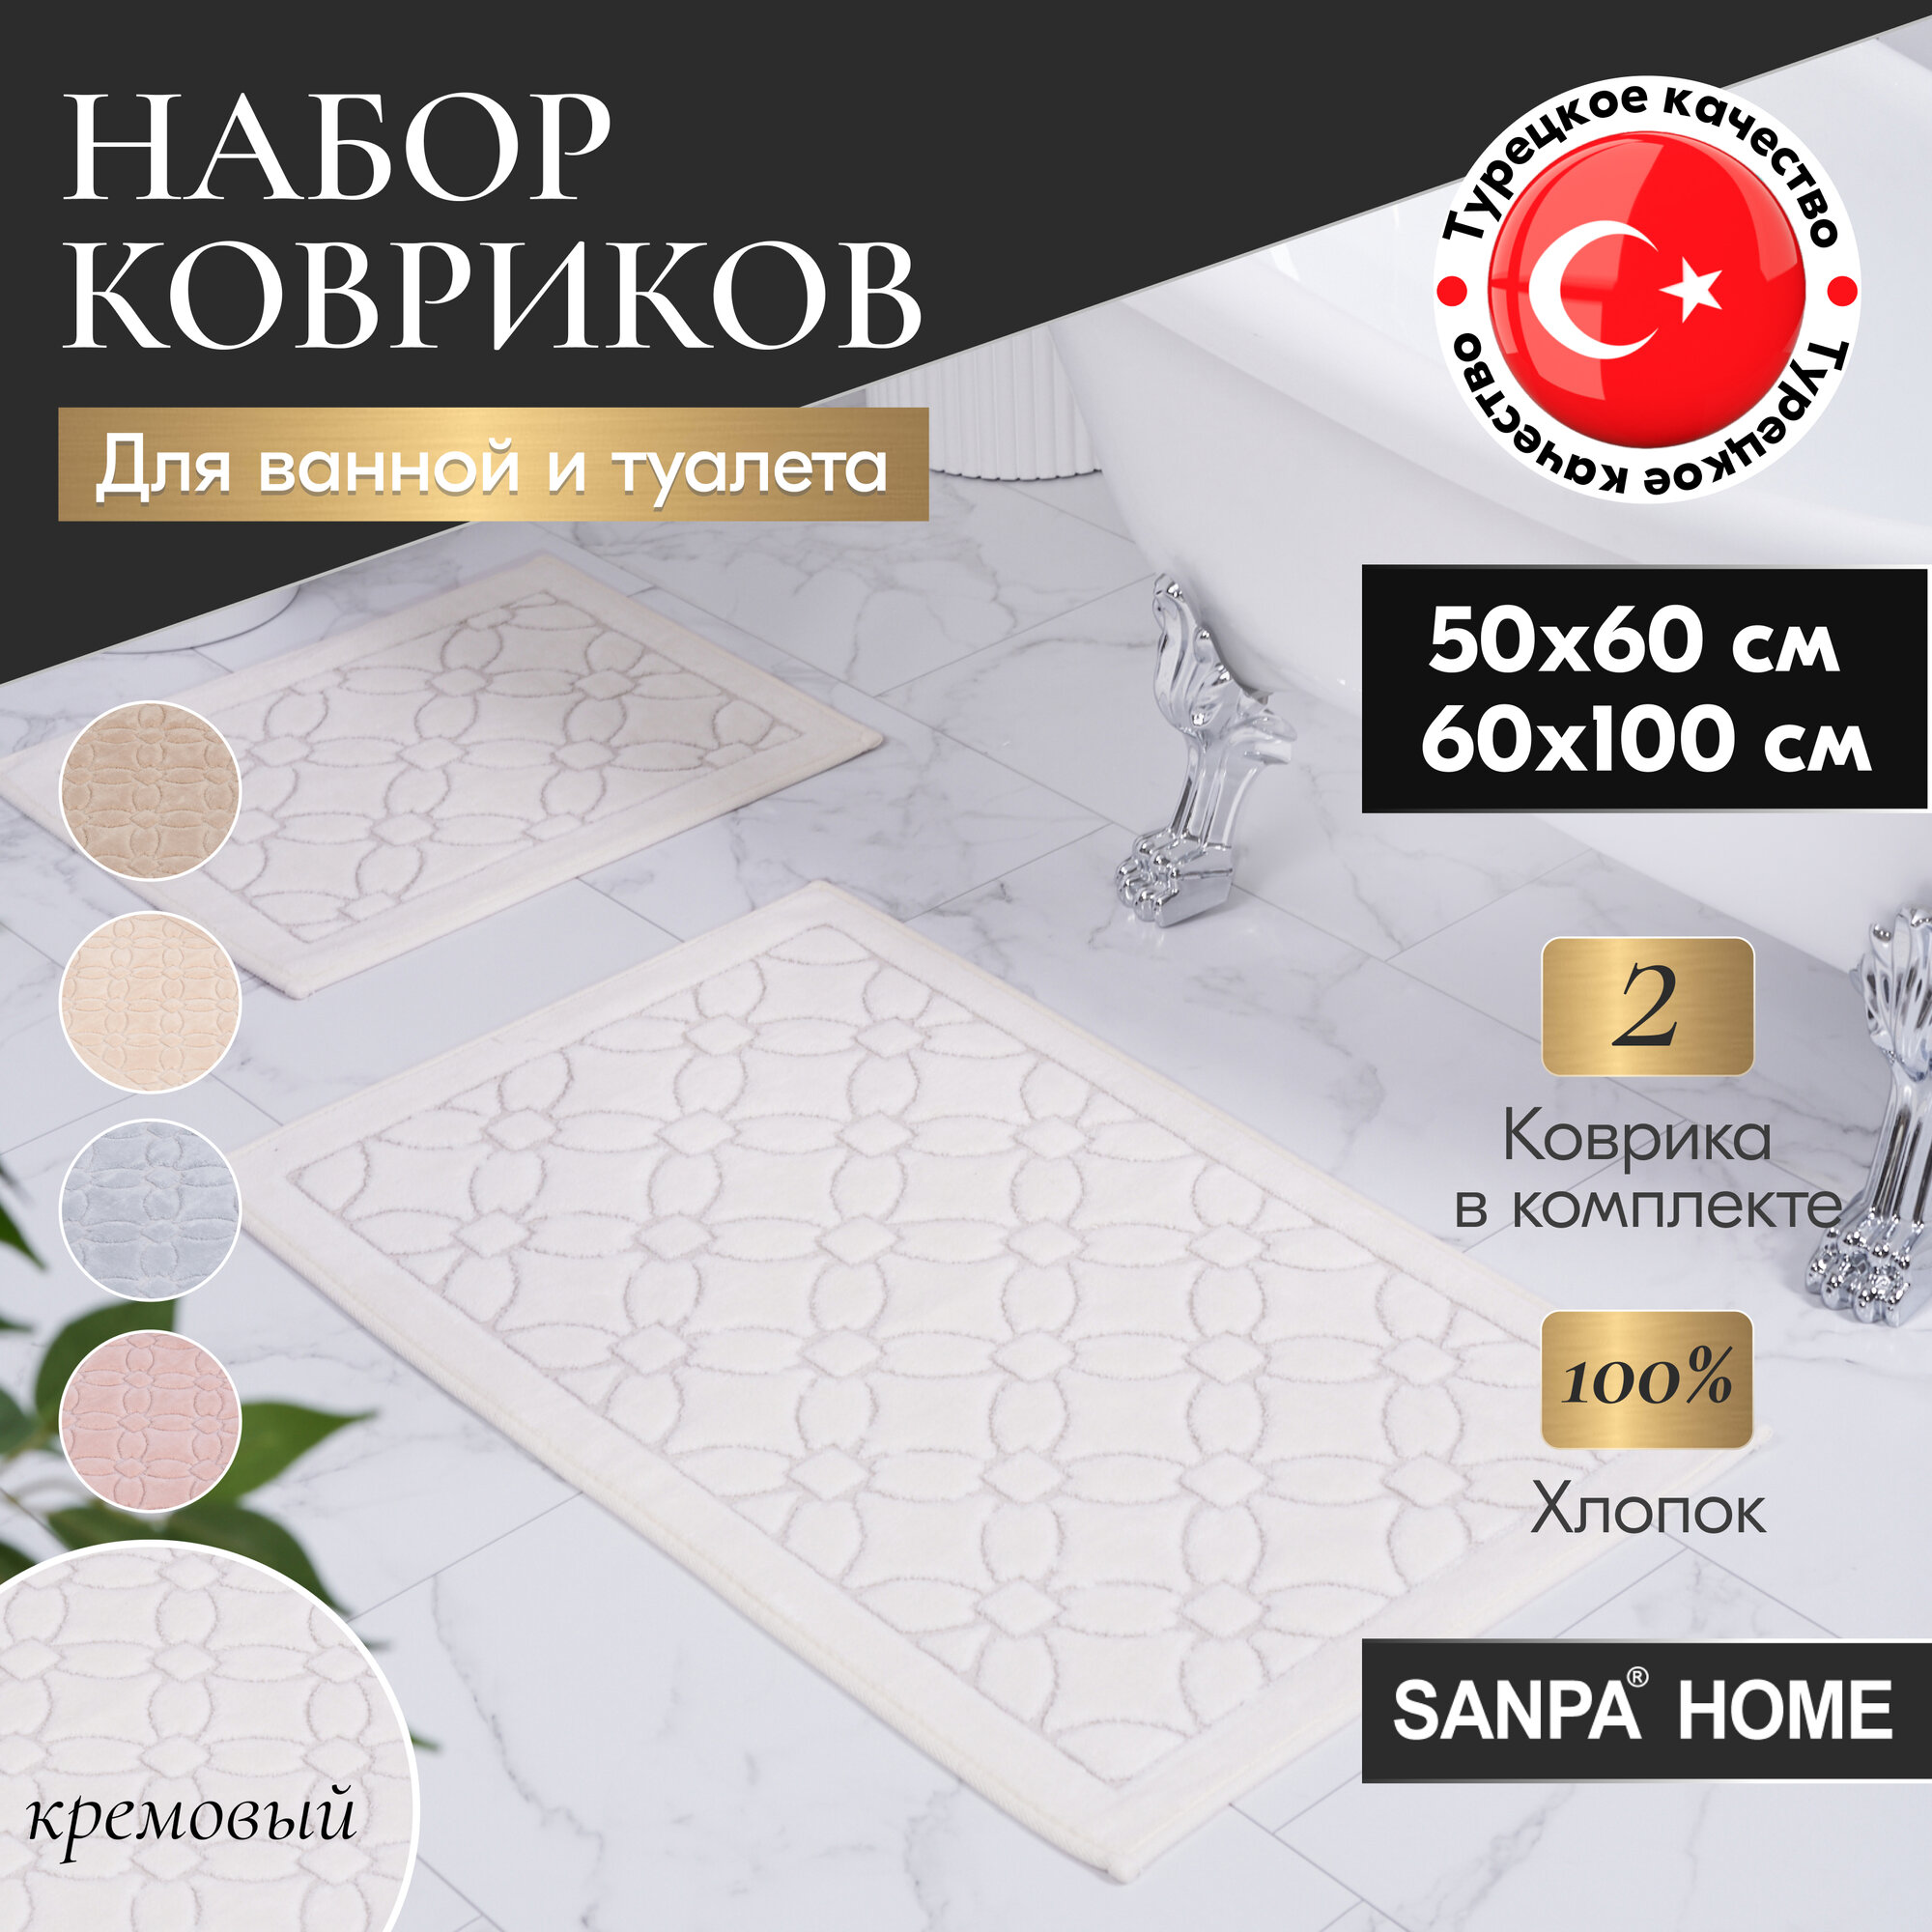 Набор ковриков для ванной и туалета SANPA HOME, кремовый, 50х60, 60х100, хлопок, 2шт.